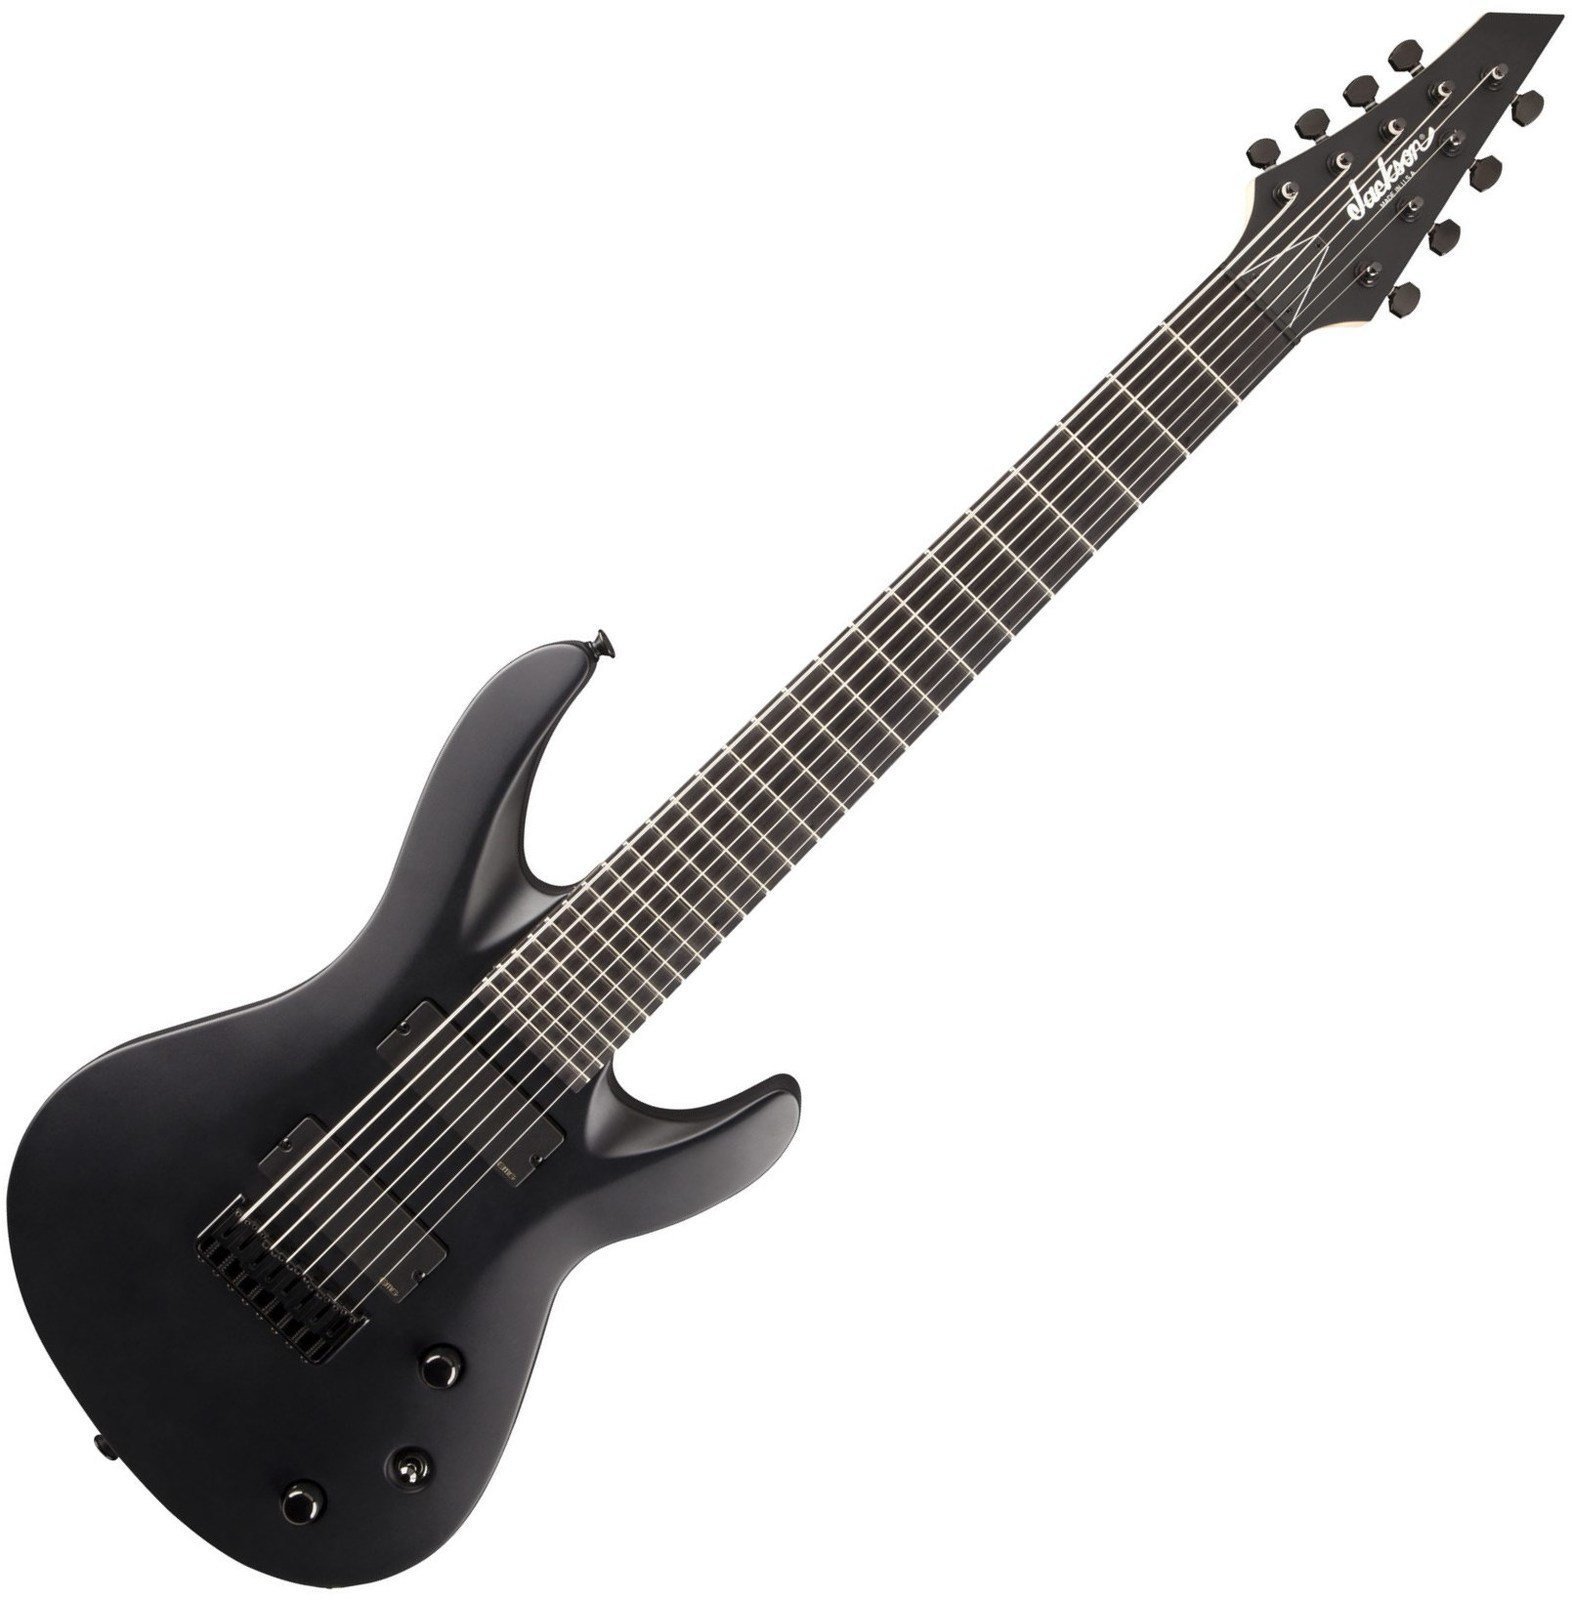 8-string electric guitar Jackson USA Select B8MG Satin Black